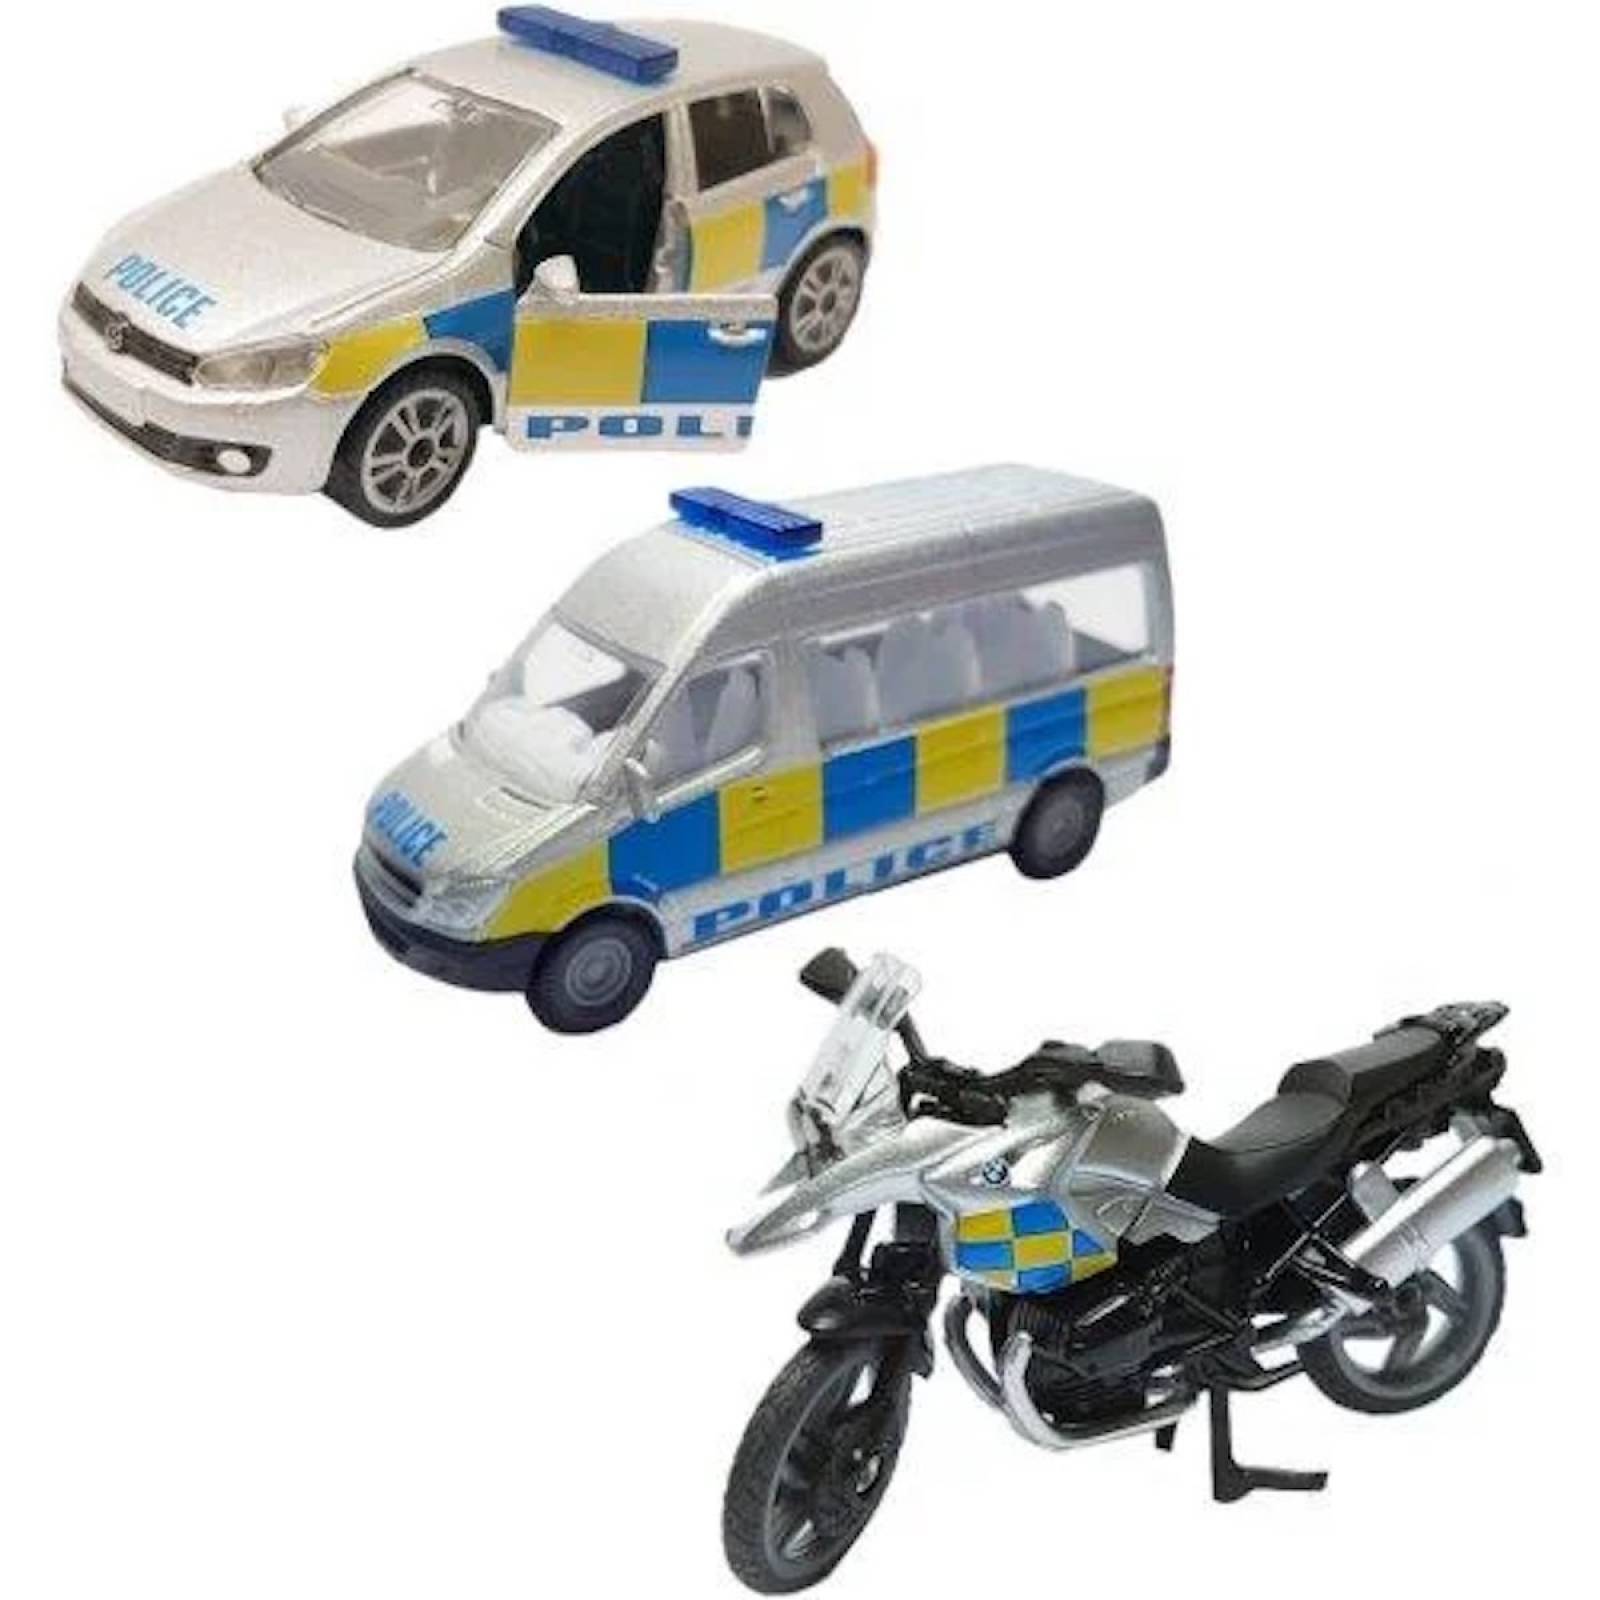 SIKU 3 Car Police Vehicle Set thumbnails